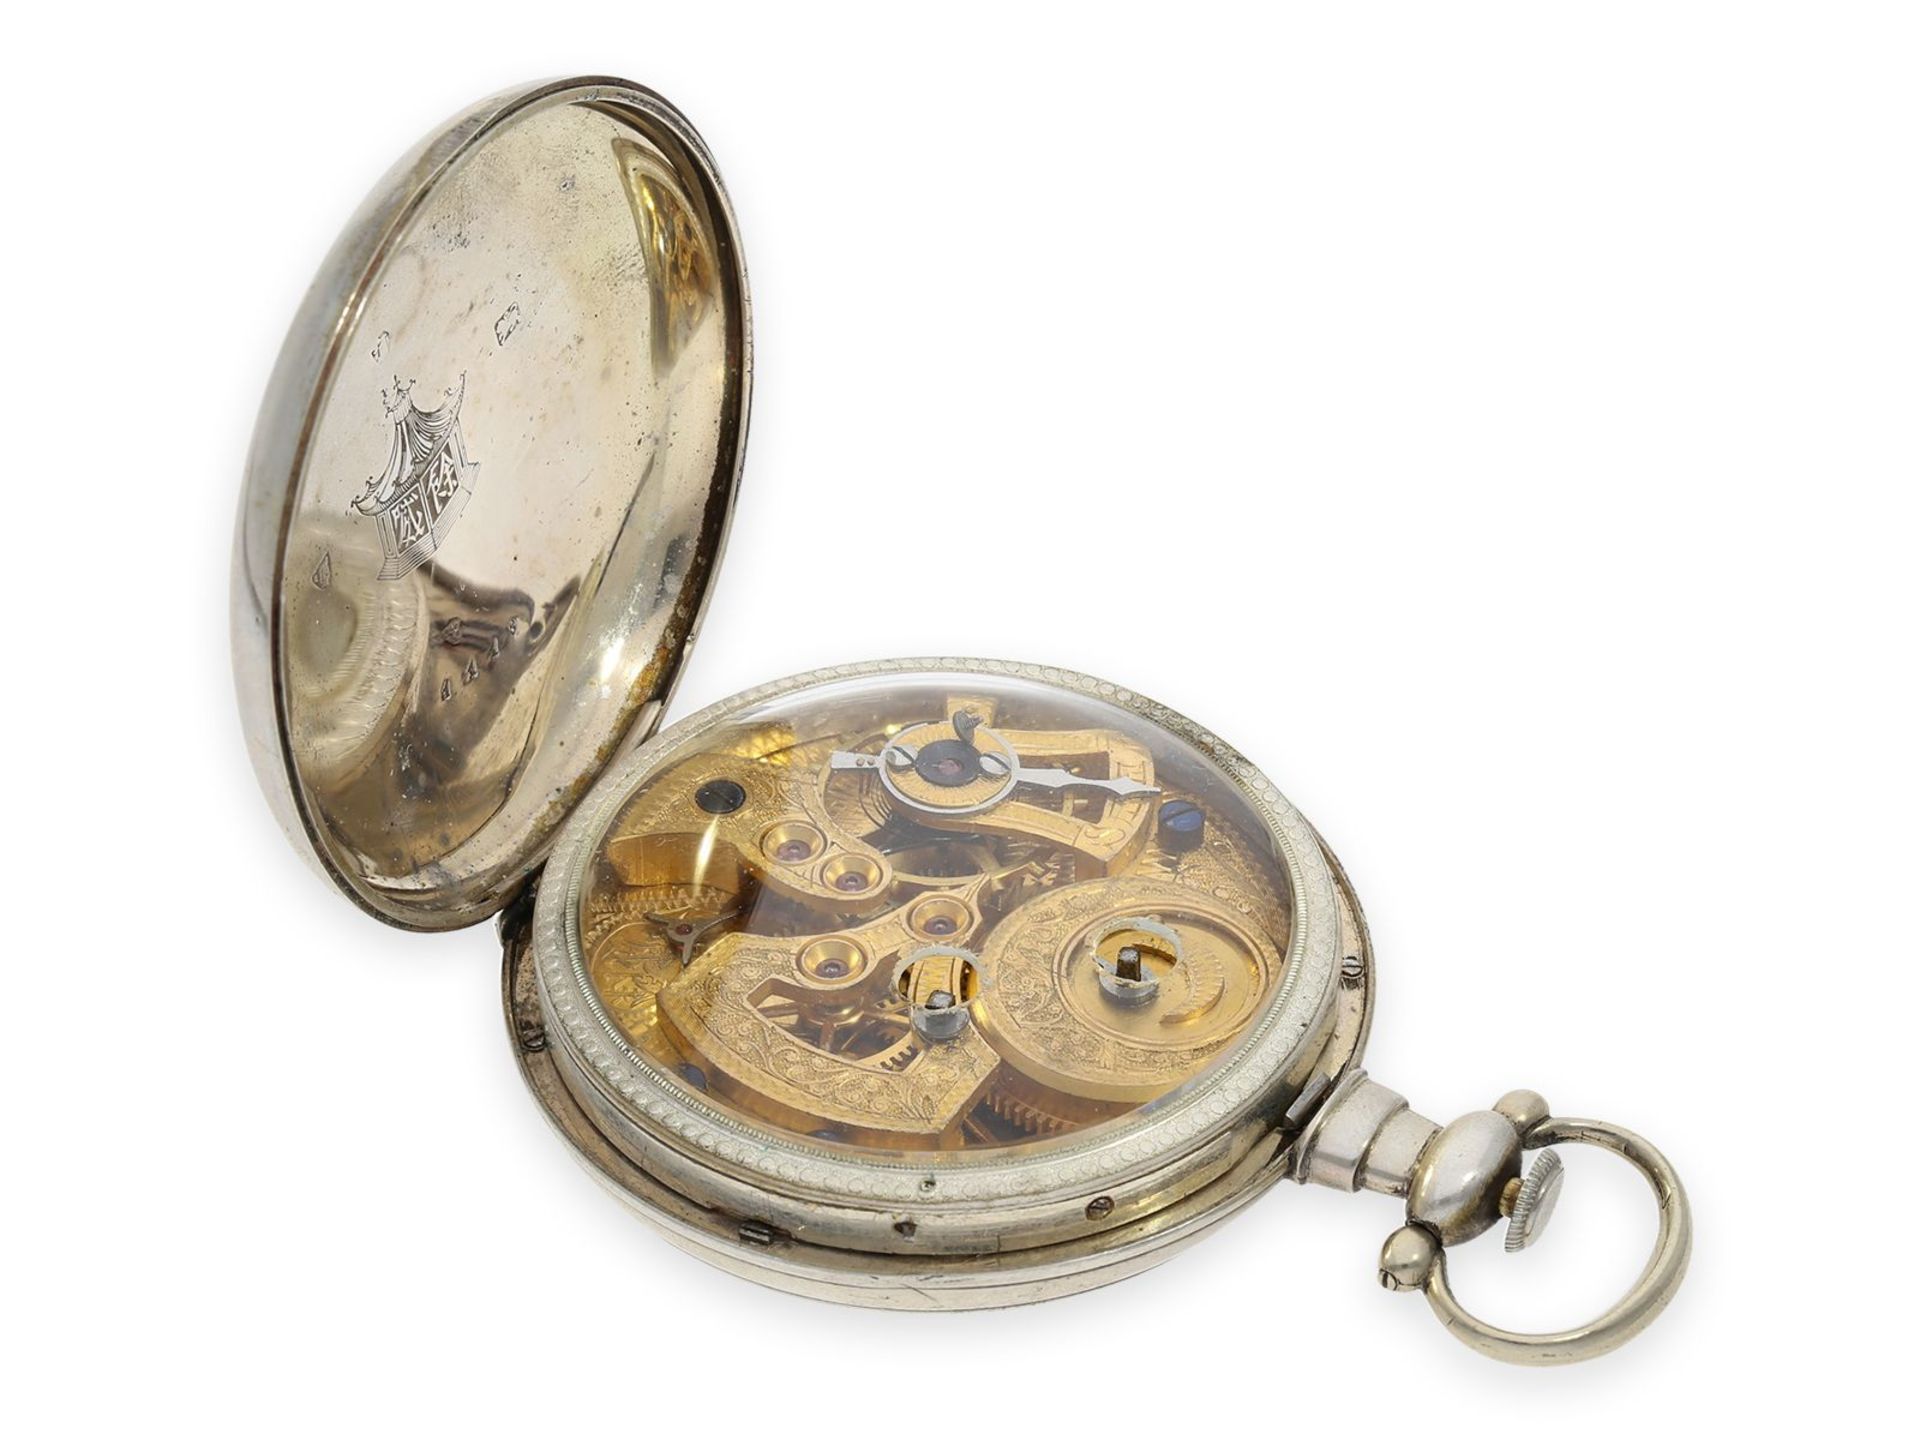 Taschenuhr: feine Taschenuhr für den chinesischen Markt mit Zentralsekunde, ca. 1860 - Bild 3 aus 4